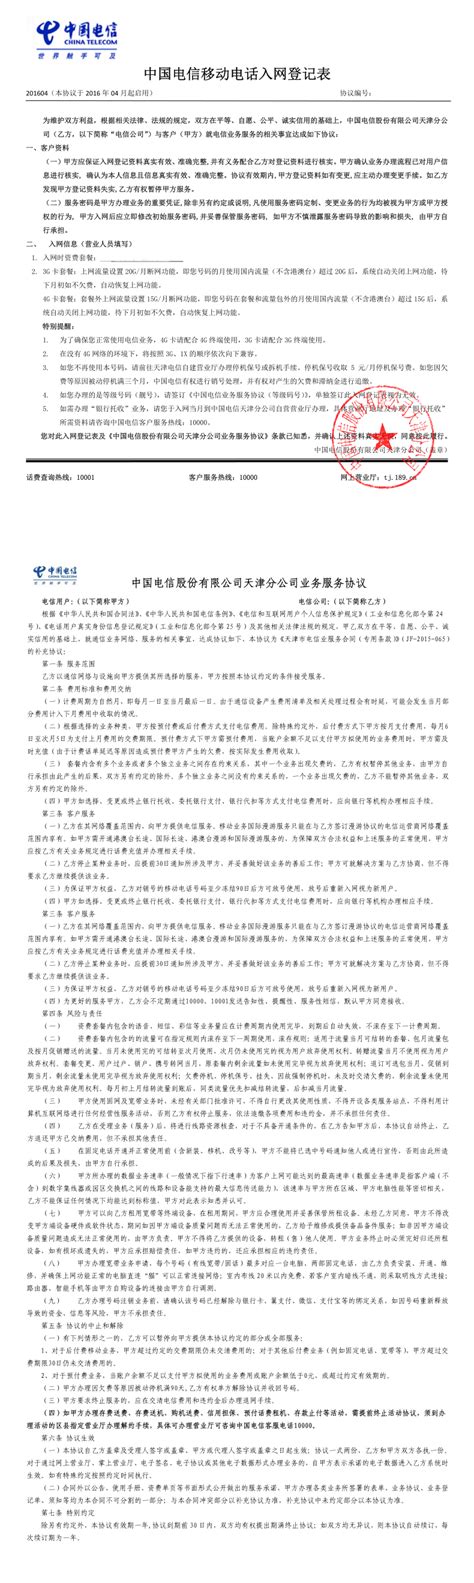 中国电信移动电话入网登记表 服务协议